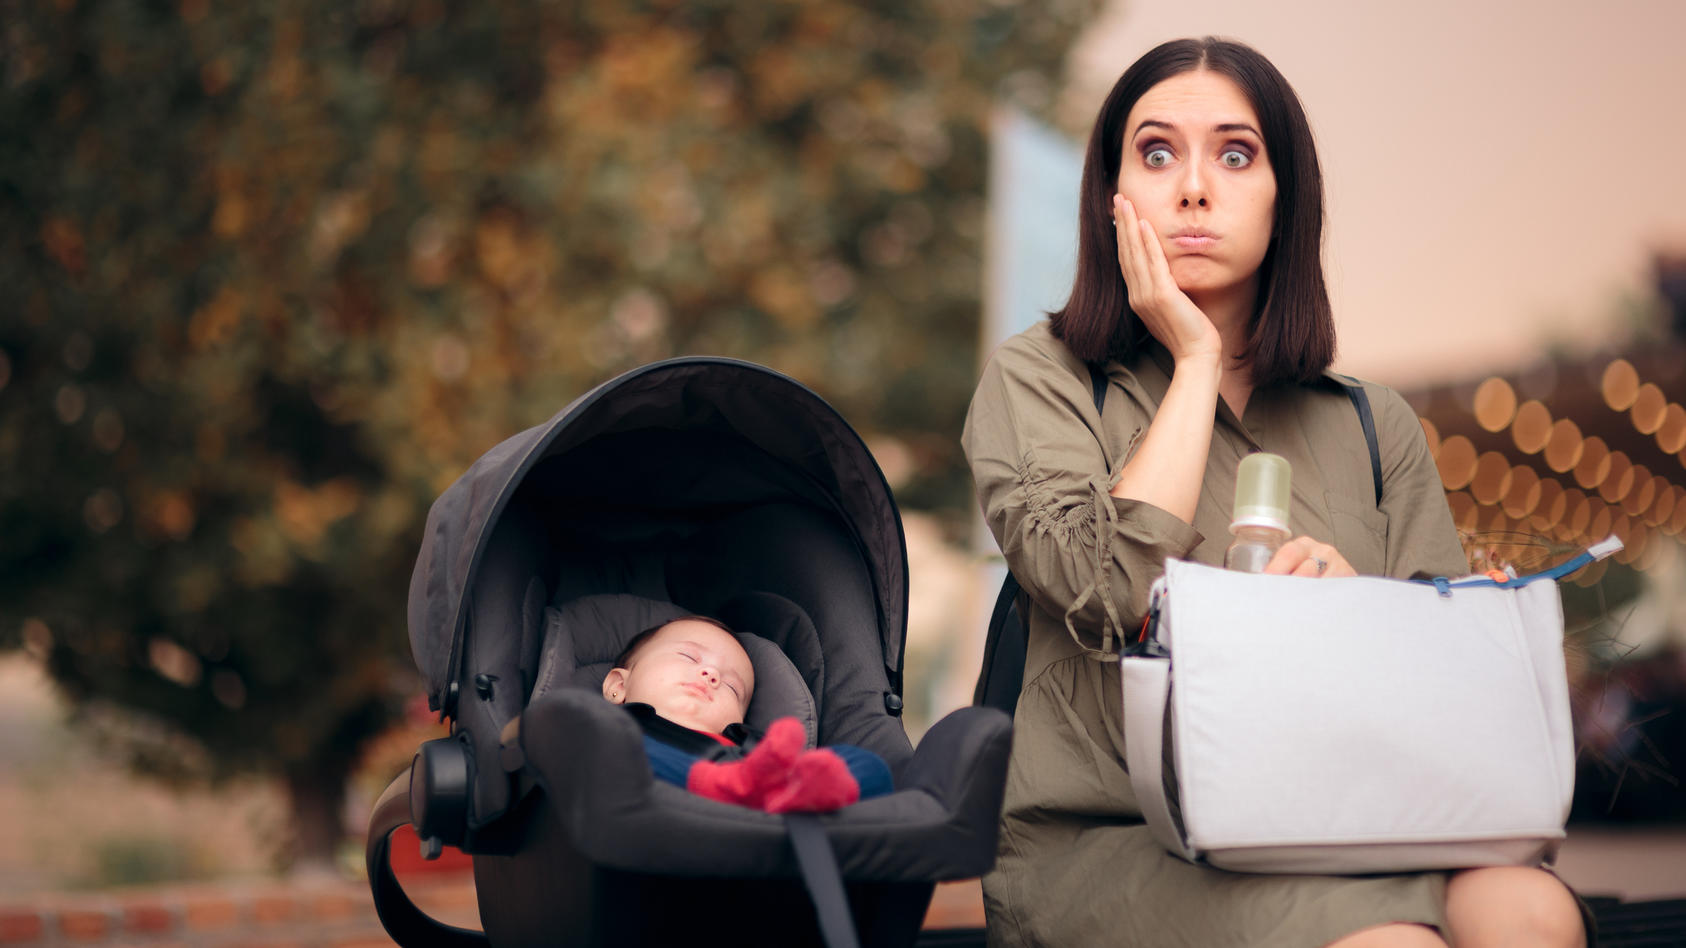 Wieder etwas wichtiges zuhause vergessen? Keine Sorge - junge Mütter und Schwangere sind häufig vergesslicher als sonst. Woran das liegt und was Sie dagegen tun können.